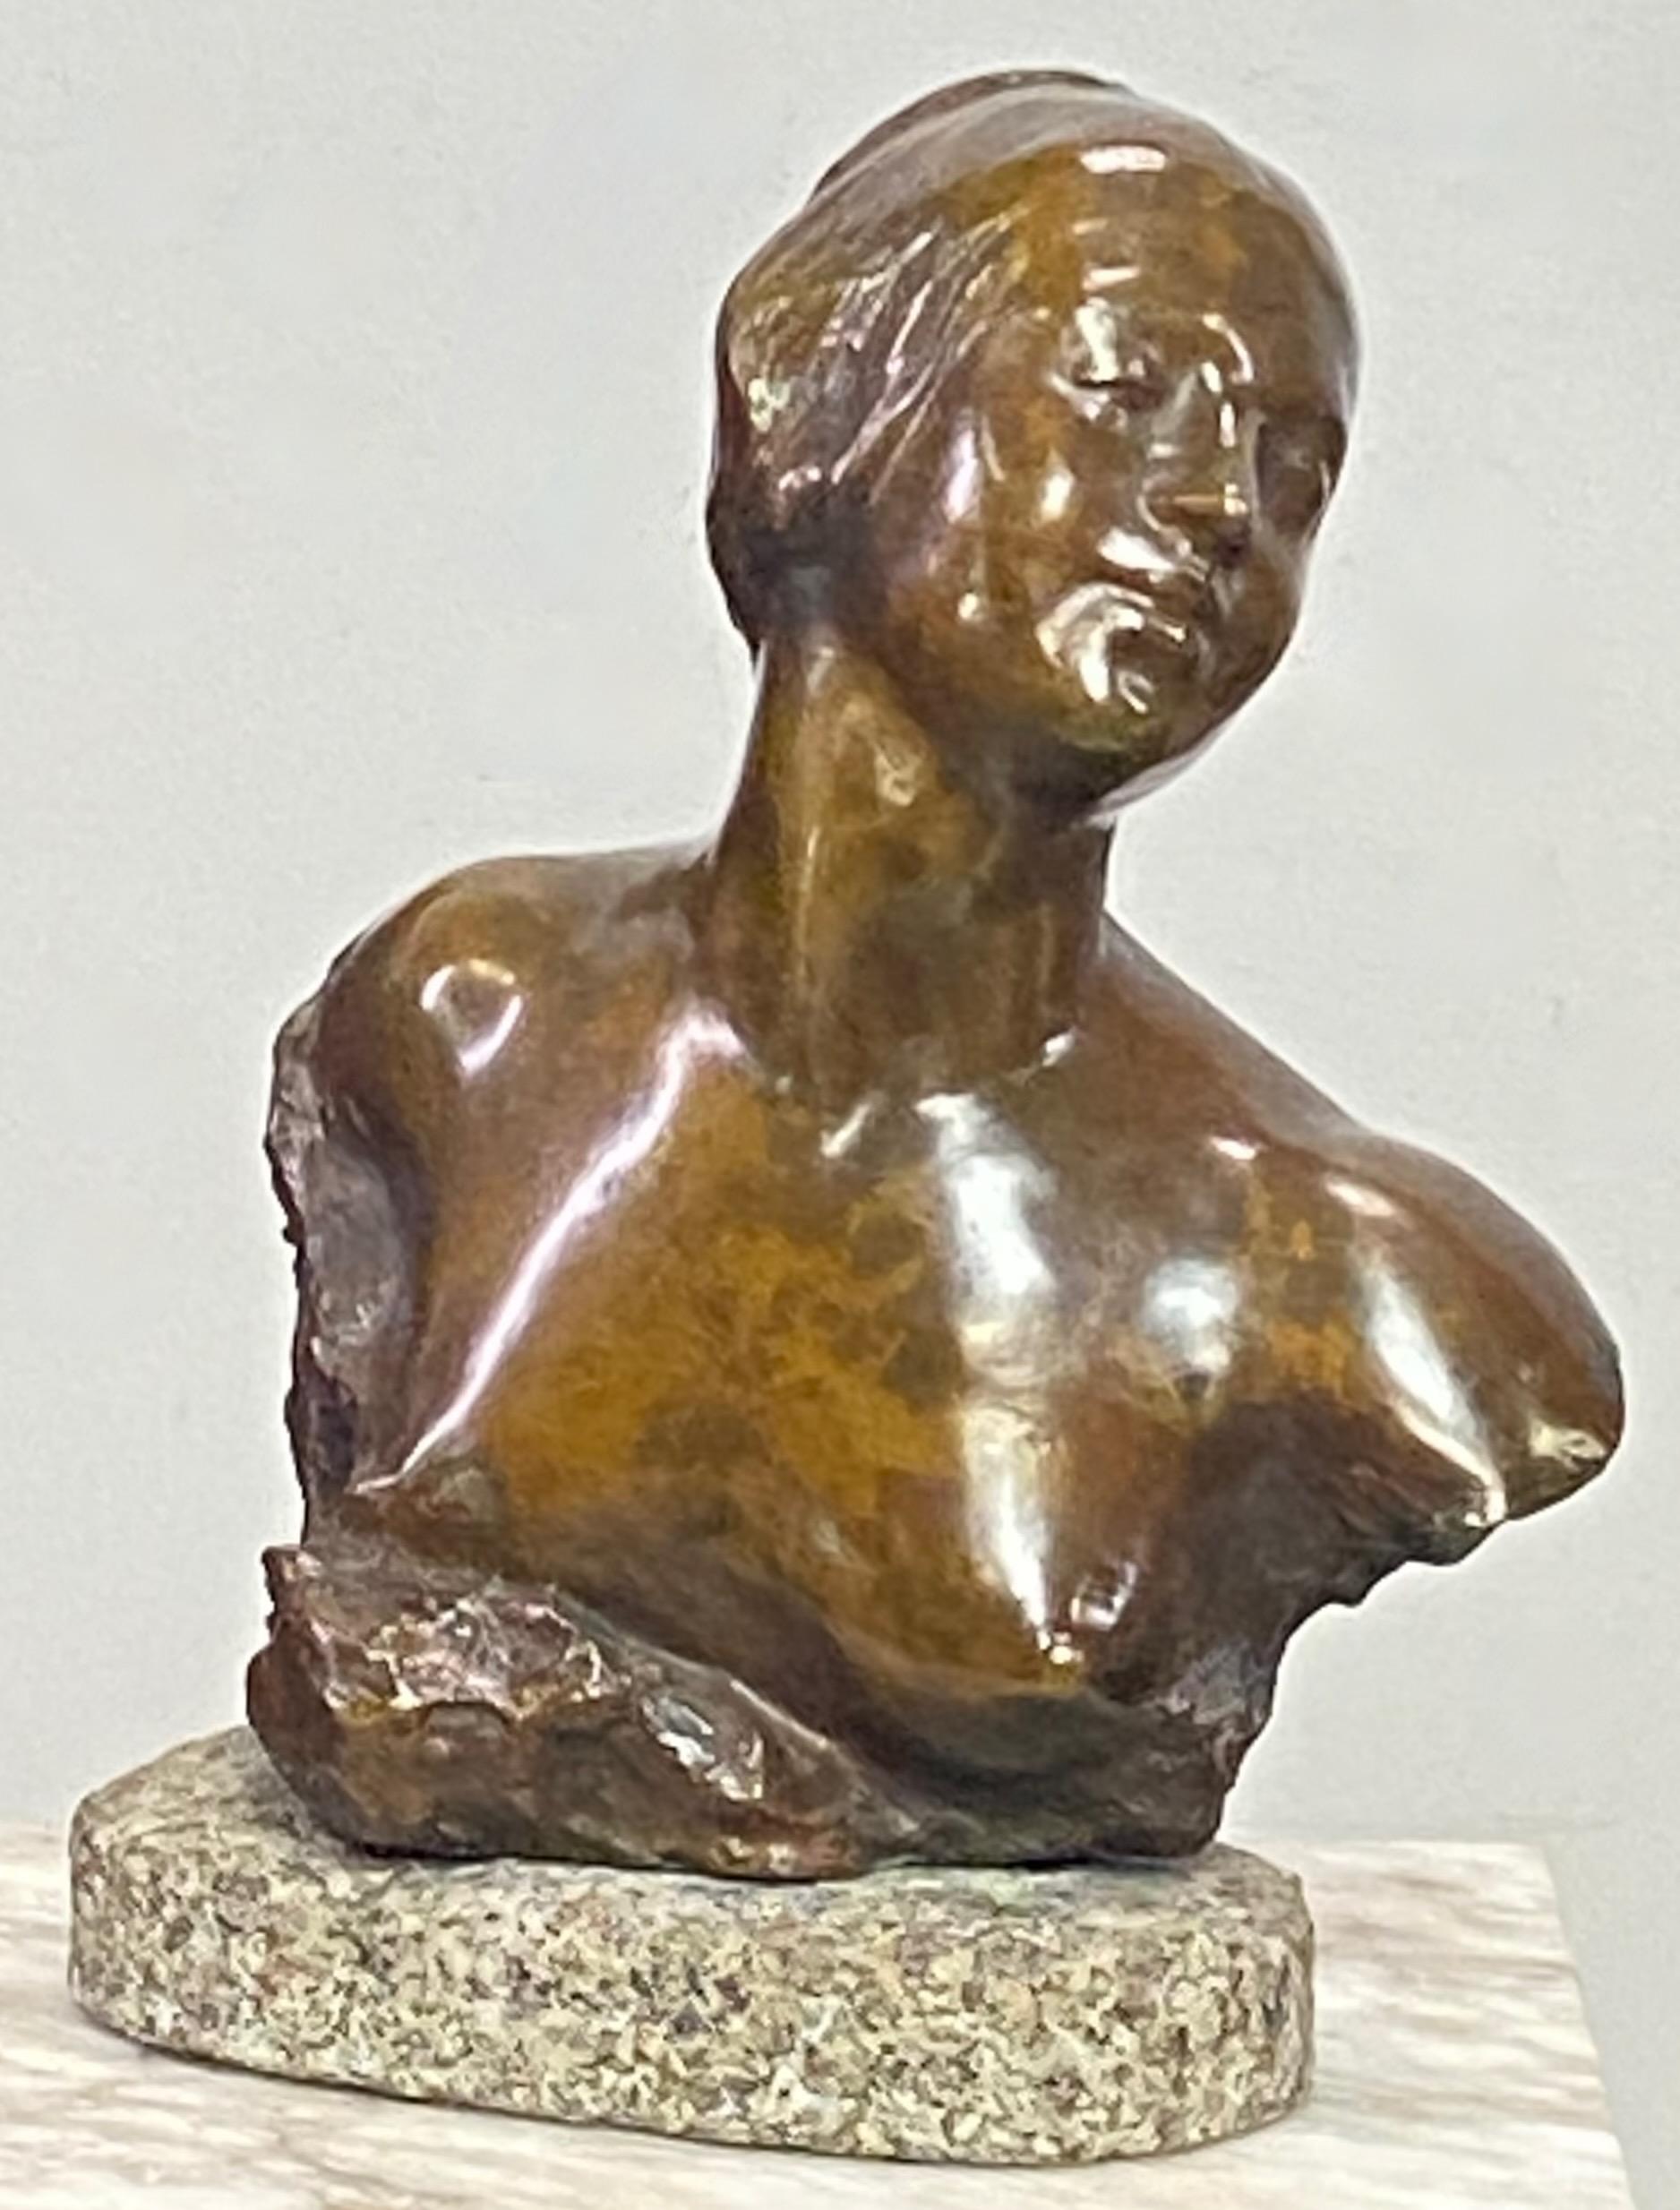 Buste en bronze d'une jeune femme à l'expression sereine et à la chevelure stylisée, monté sur un bloc de granit gris ovale grossièrement sculpté. Le bronze est signé en bas à droite. 
Felix Soules (né en 1857 - mort en 1904) est connu pour la